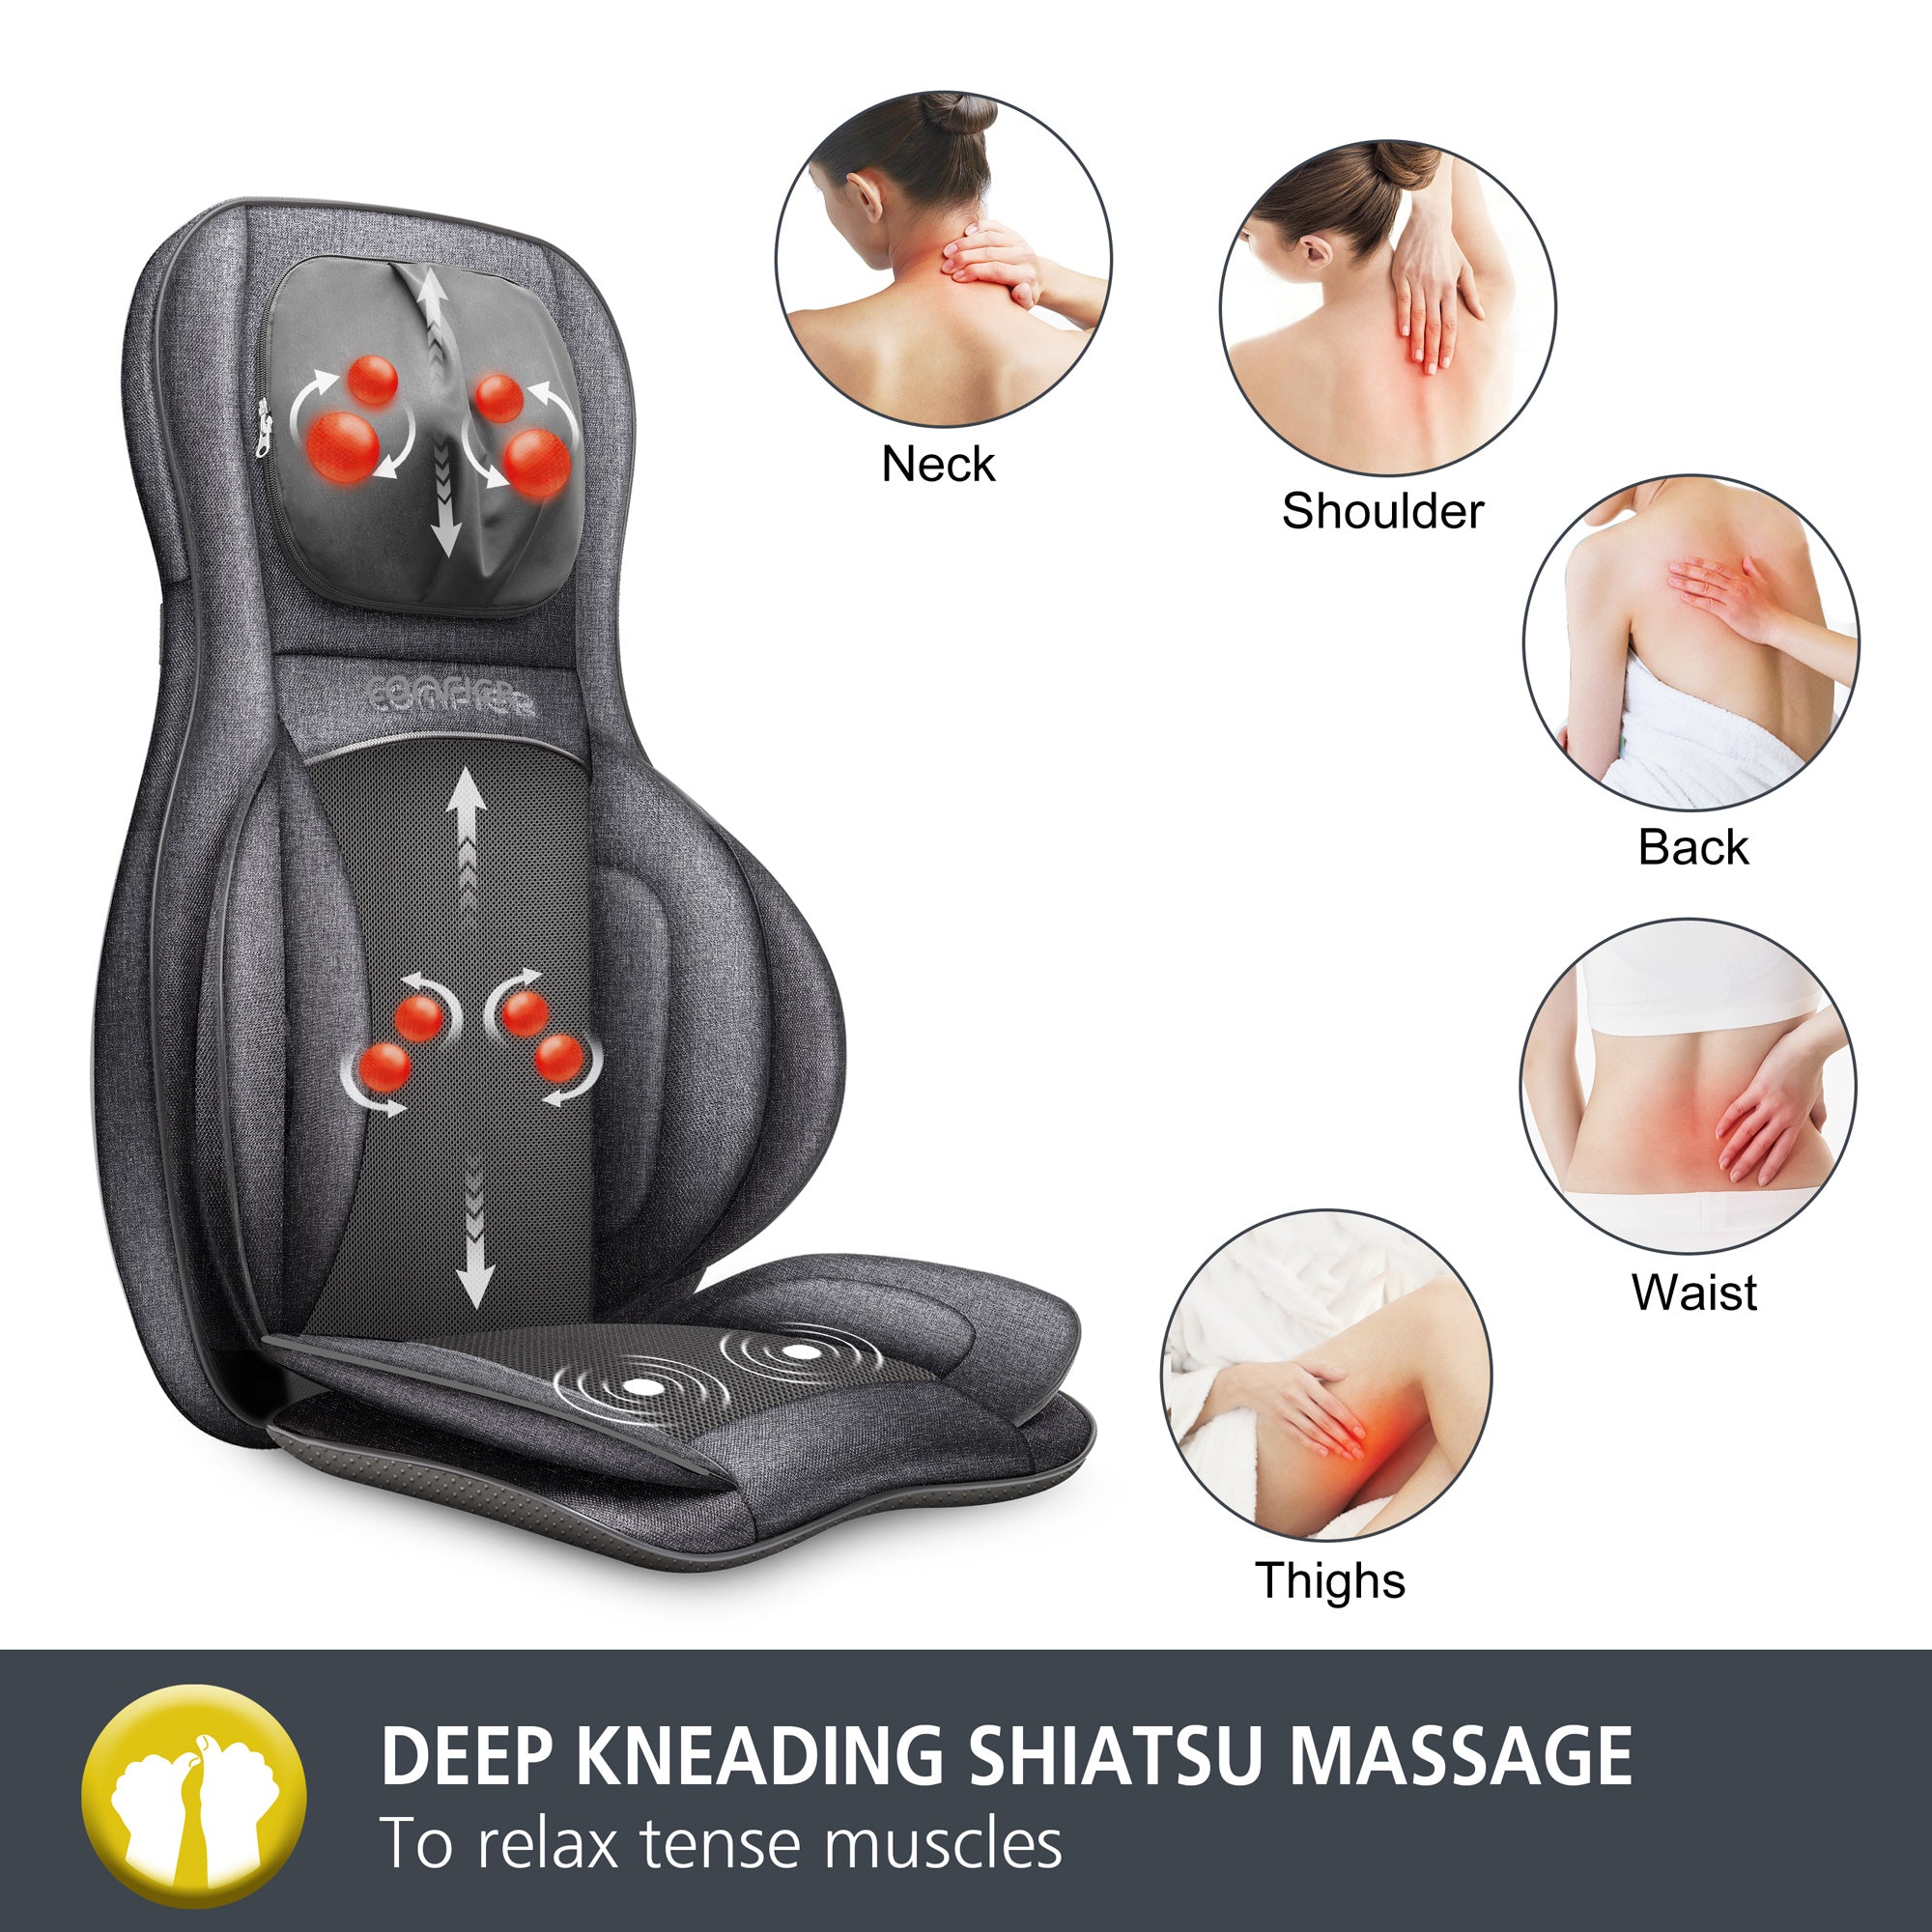 Comfier Shiatsu Neck & Back Massager review  2D/3D Kneading Full Back  Massager 